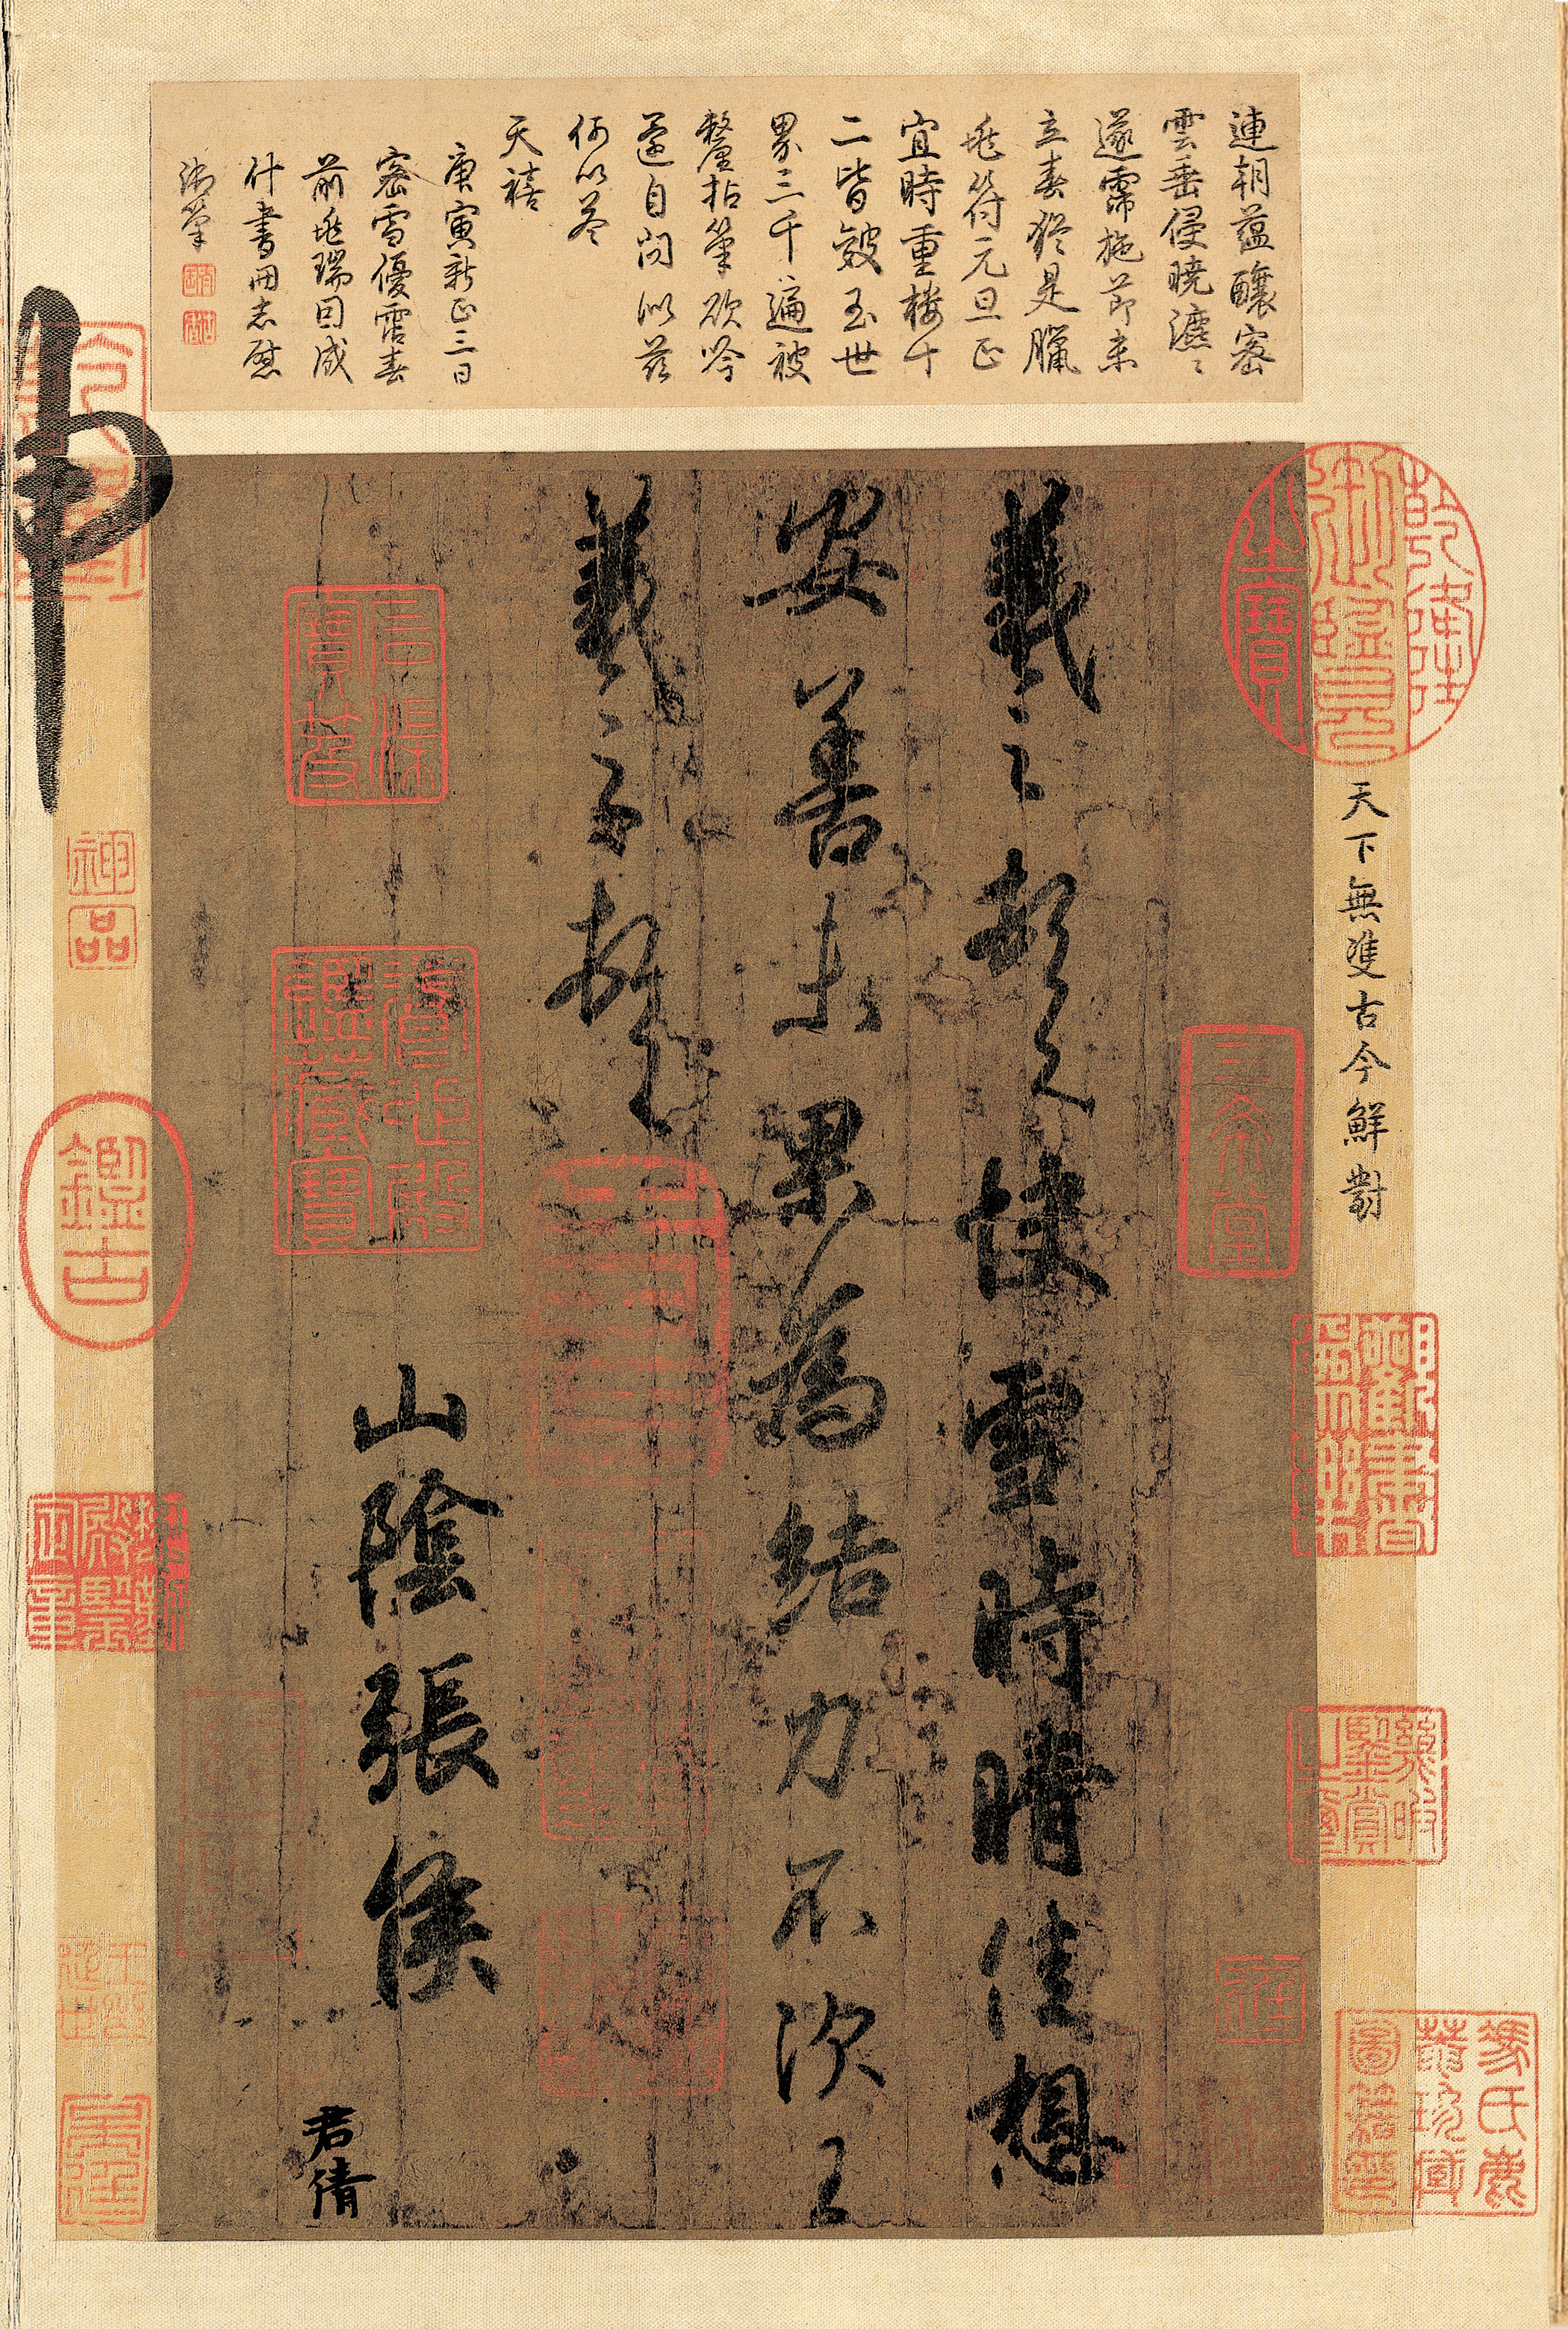 General 2100x3119 kanji calligraphy text Chinese Wang xi zhi